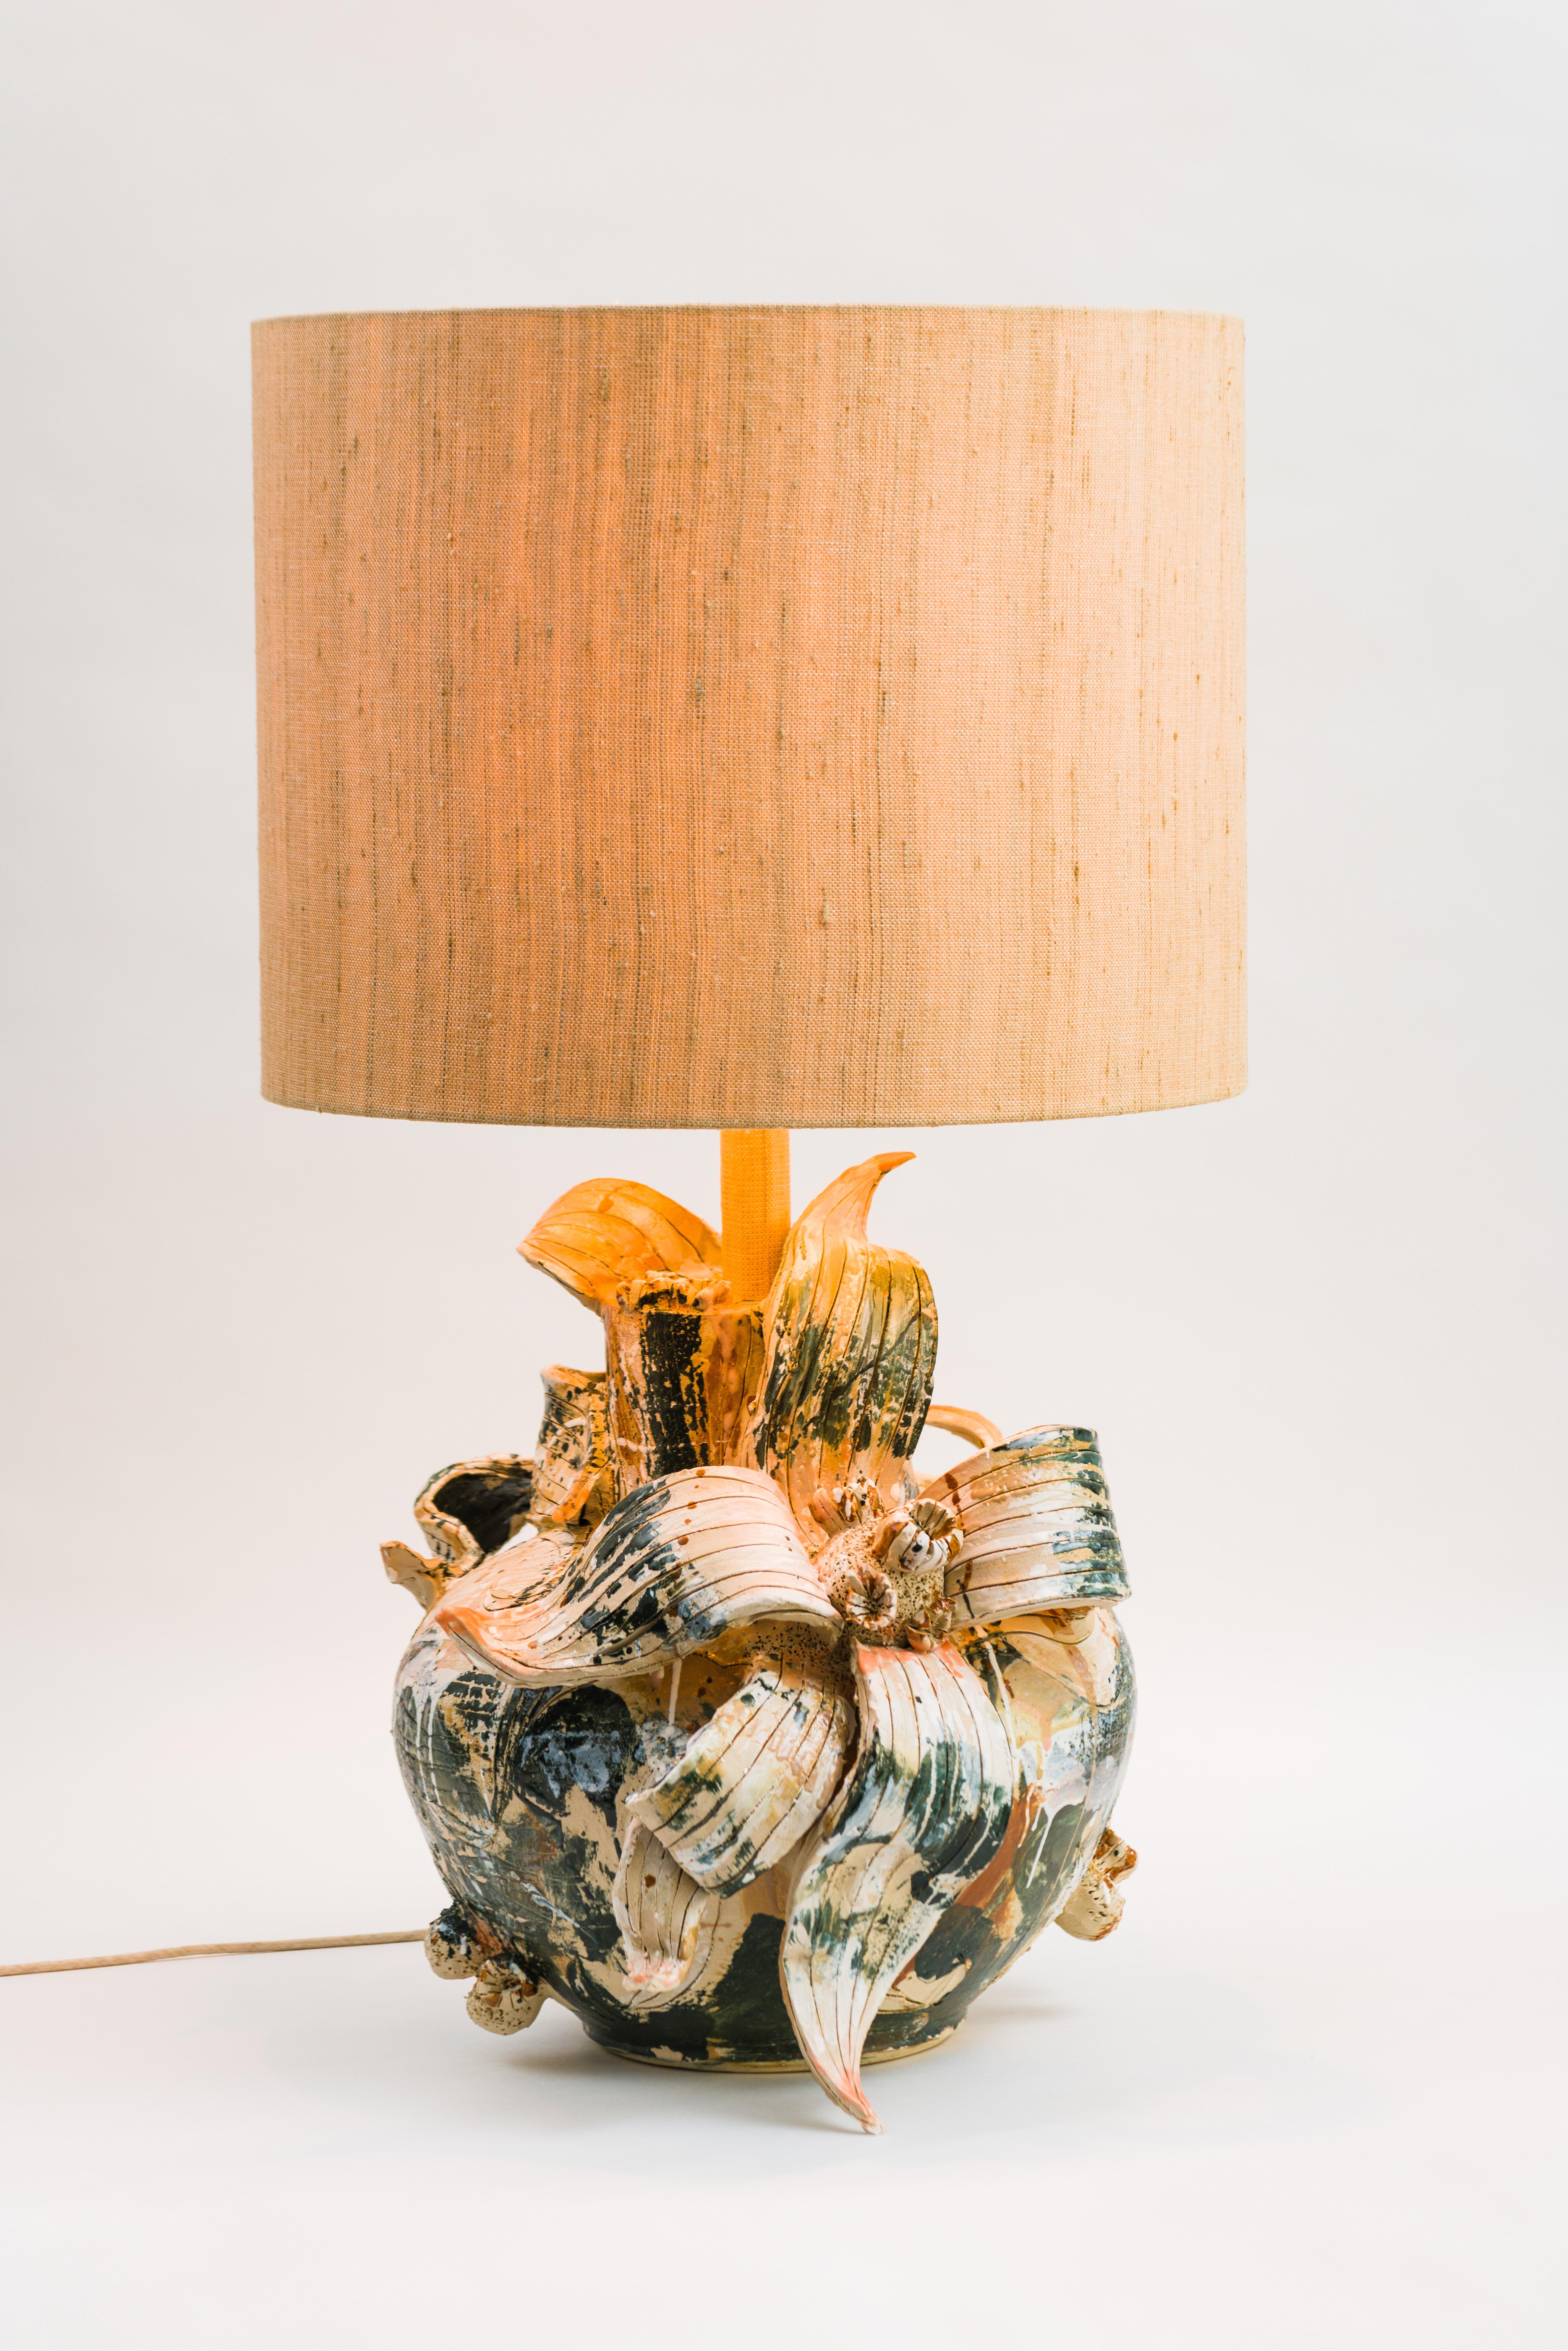 Céramique Maarten Vrolijk, lampe en terre cuite en fleurs MVC 21008 en vente